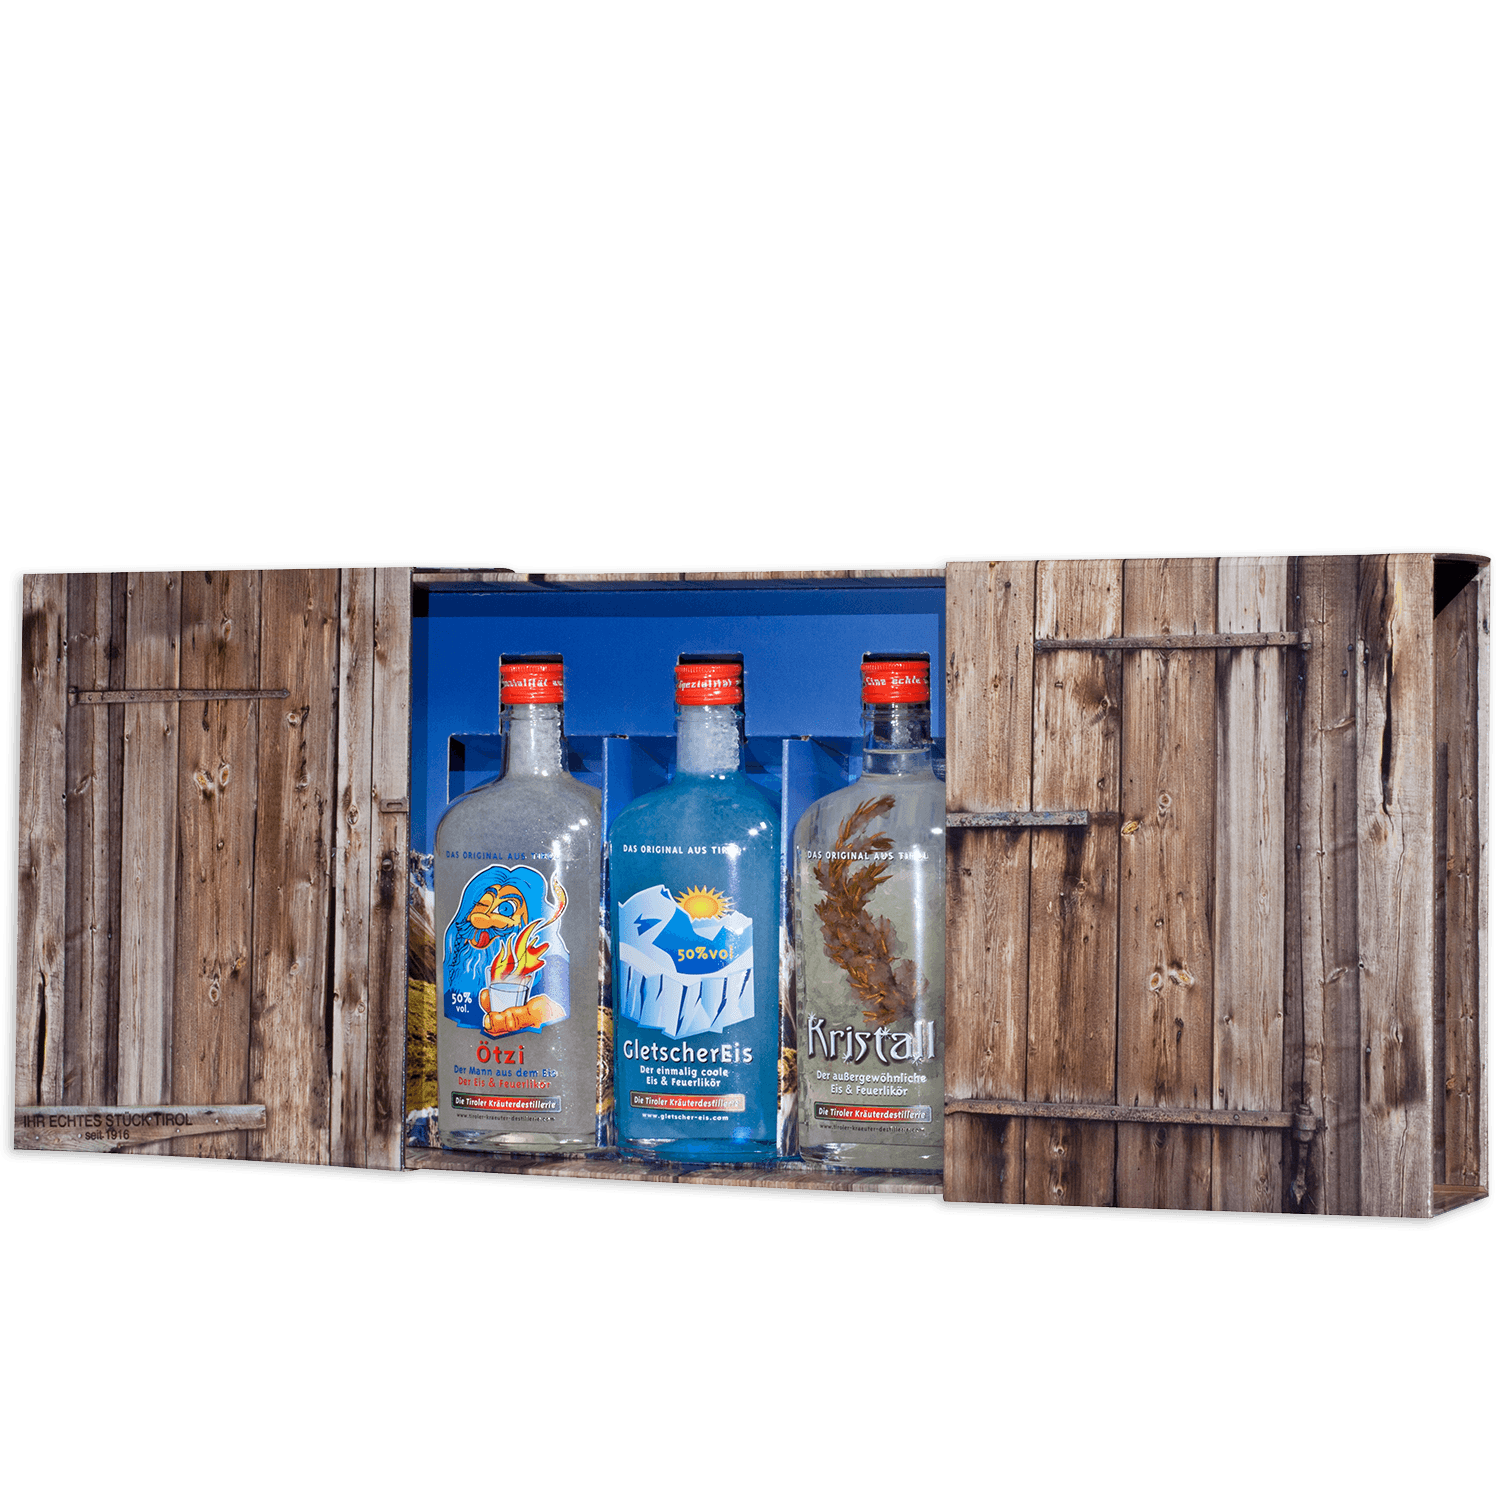 High-quality gift box with fire liqueurs from the Tiroler Kräuterdestillerie 